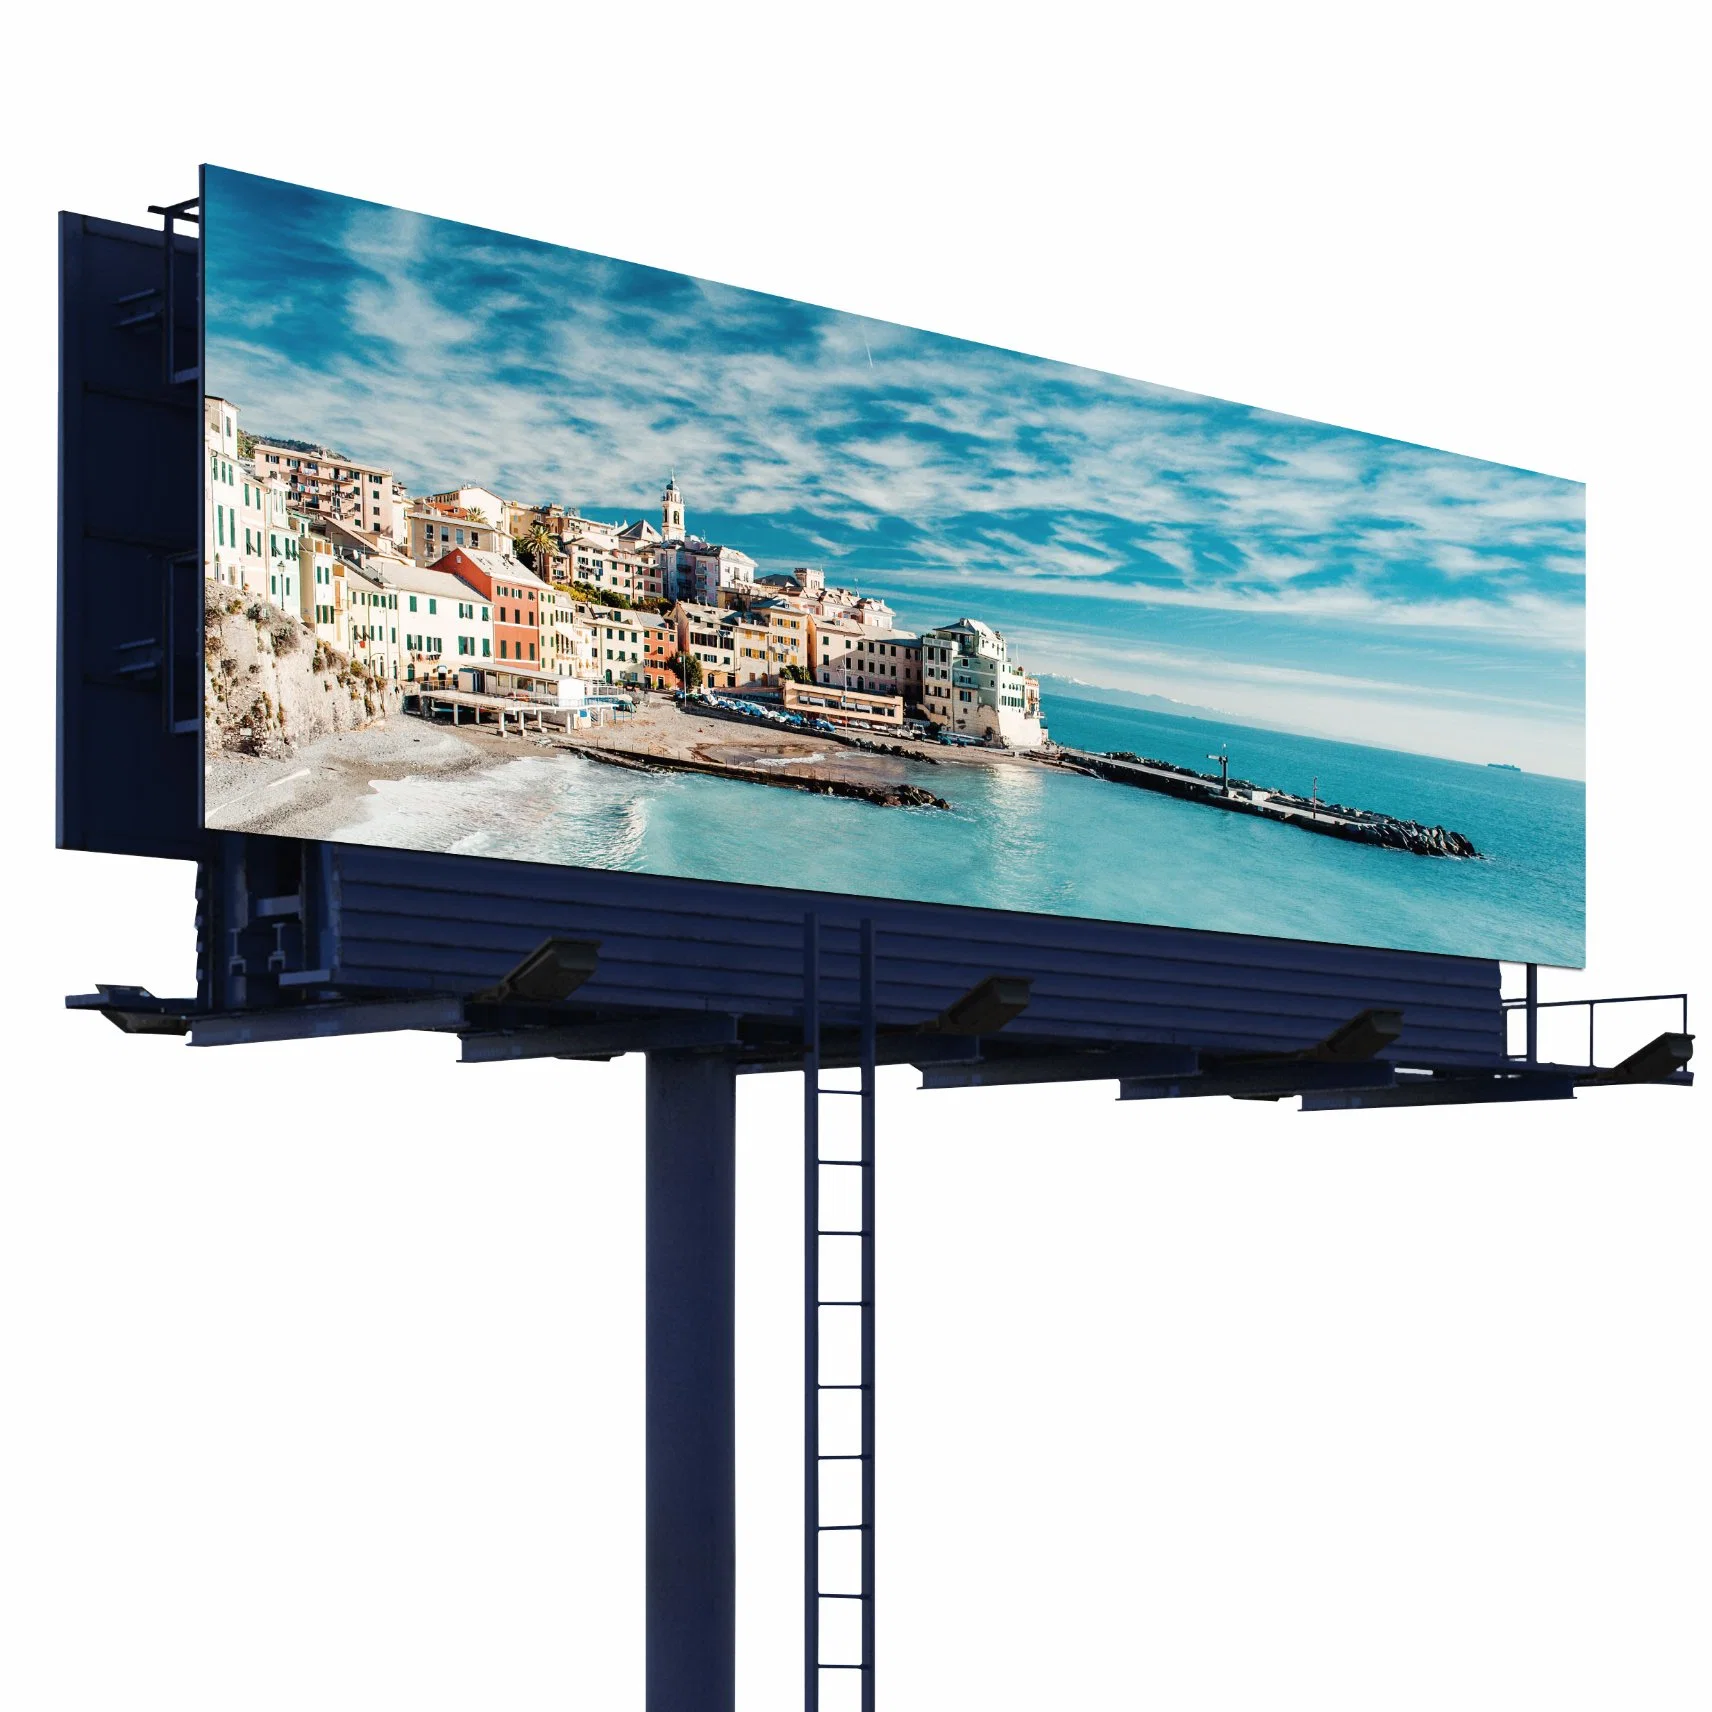 Индикатор Lofit видео Wall Outdoor P6-P10 для использования внутри помещений большой открытый гигантские рекламы создание анимации средства массовой информации фасадом кривой видеостены невооруженным глазом 3D светодиодный дисплей